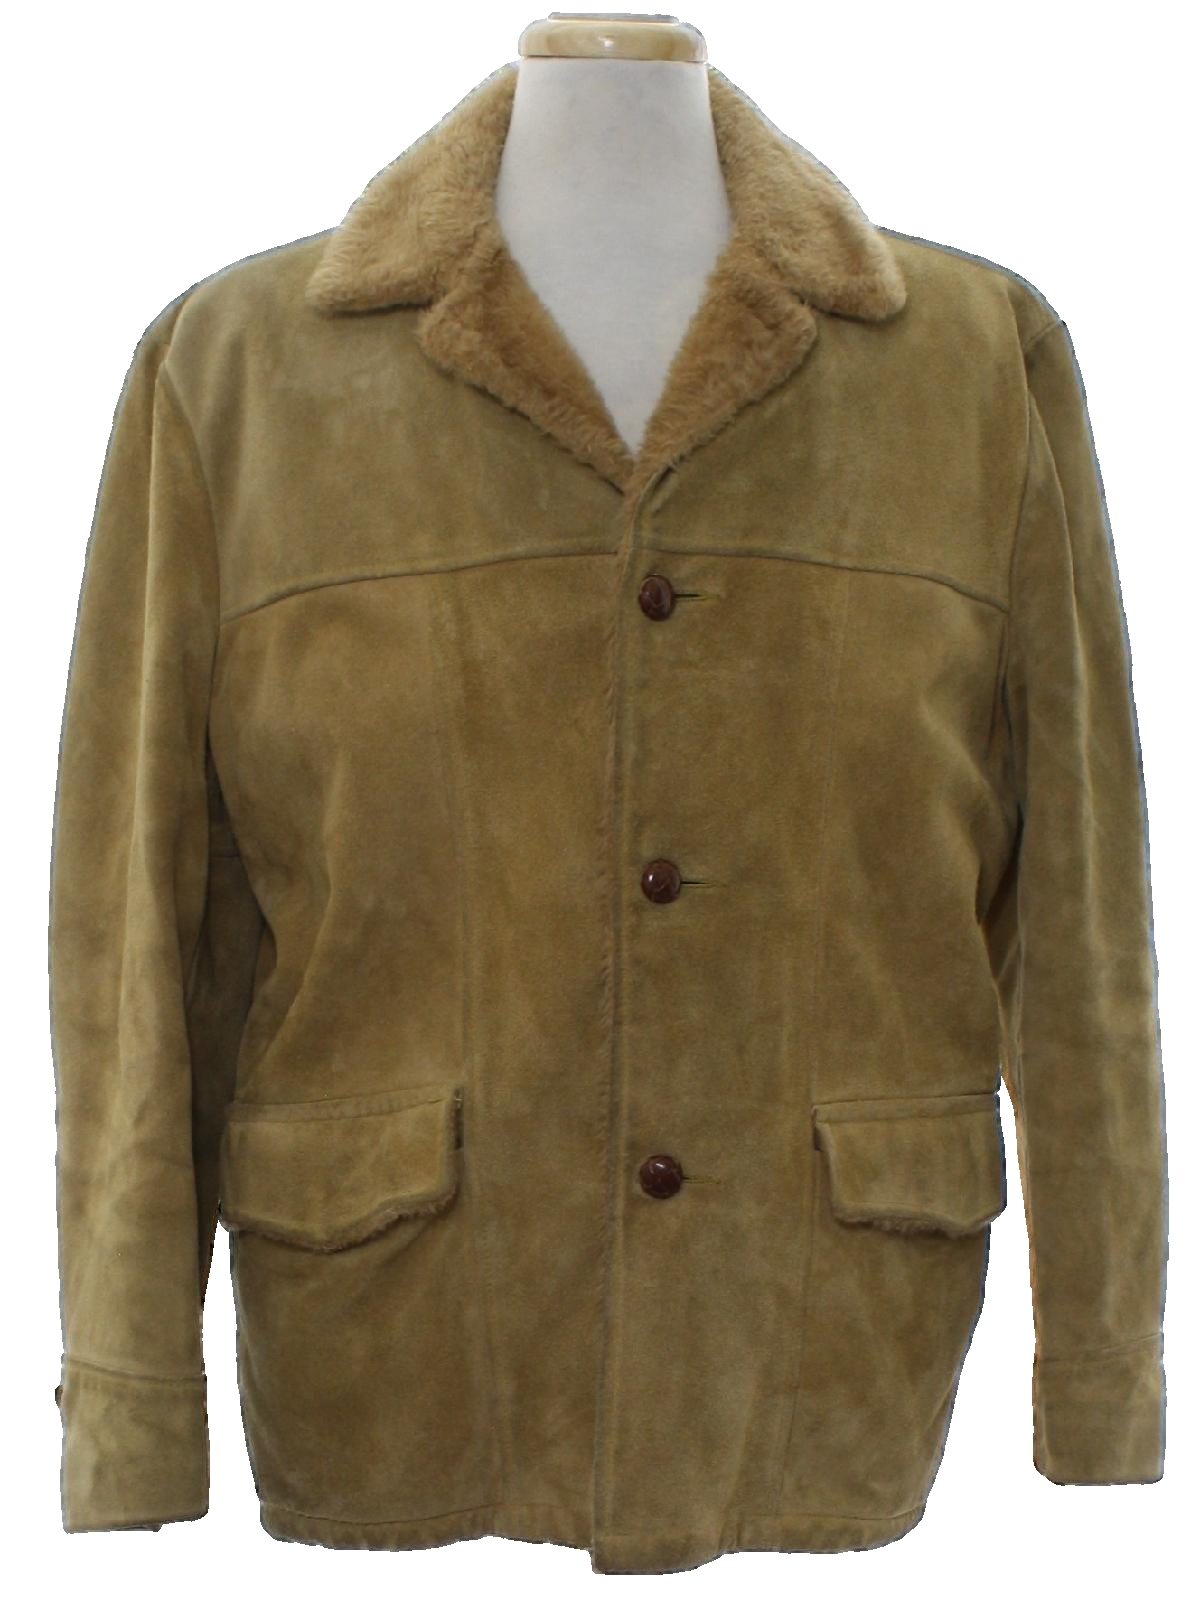 Retro 1960's Leather Jacket (Sears Oakbrook Sportswear) : Late 60s ...